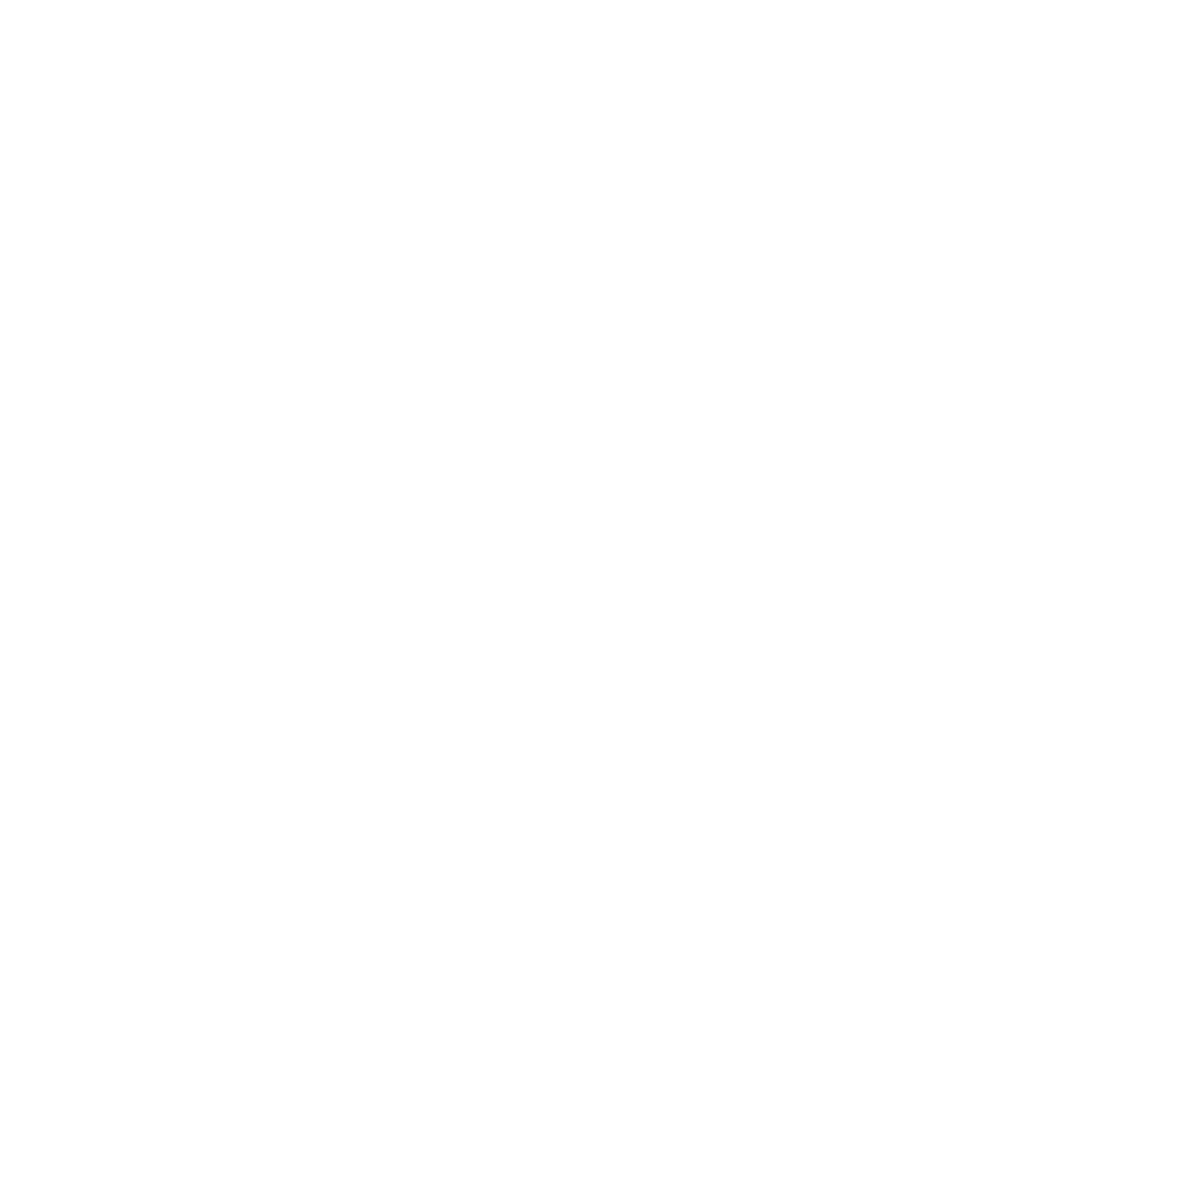 USA TEENS